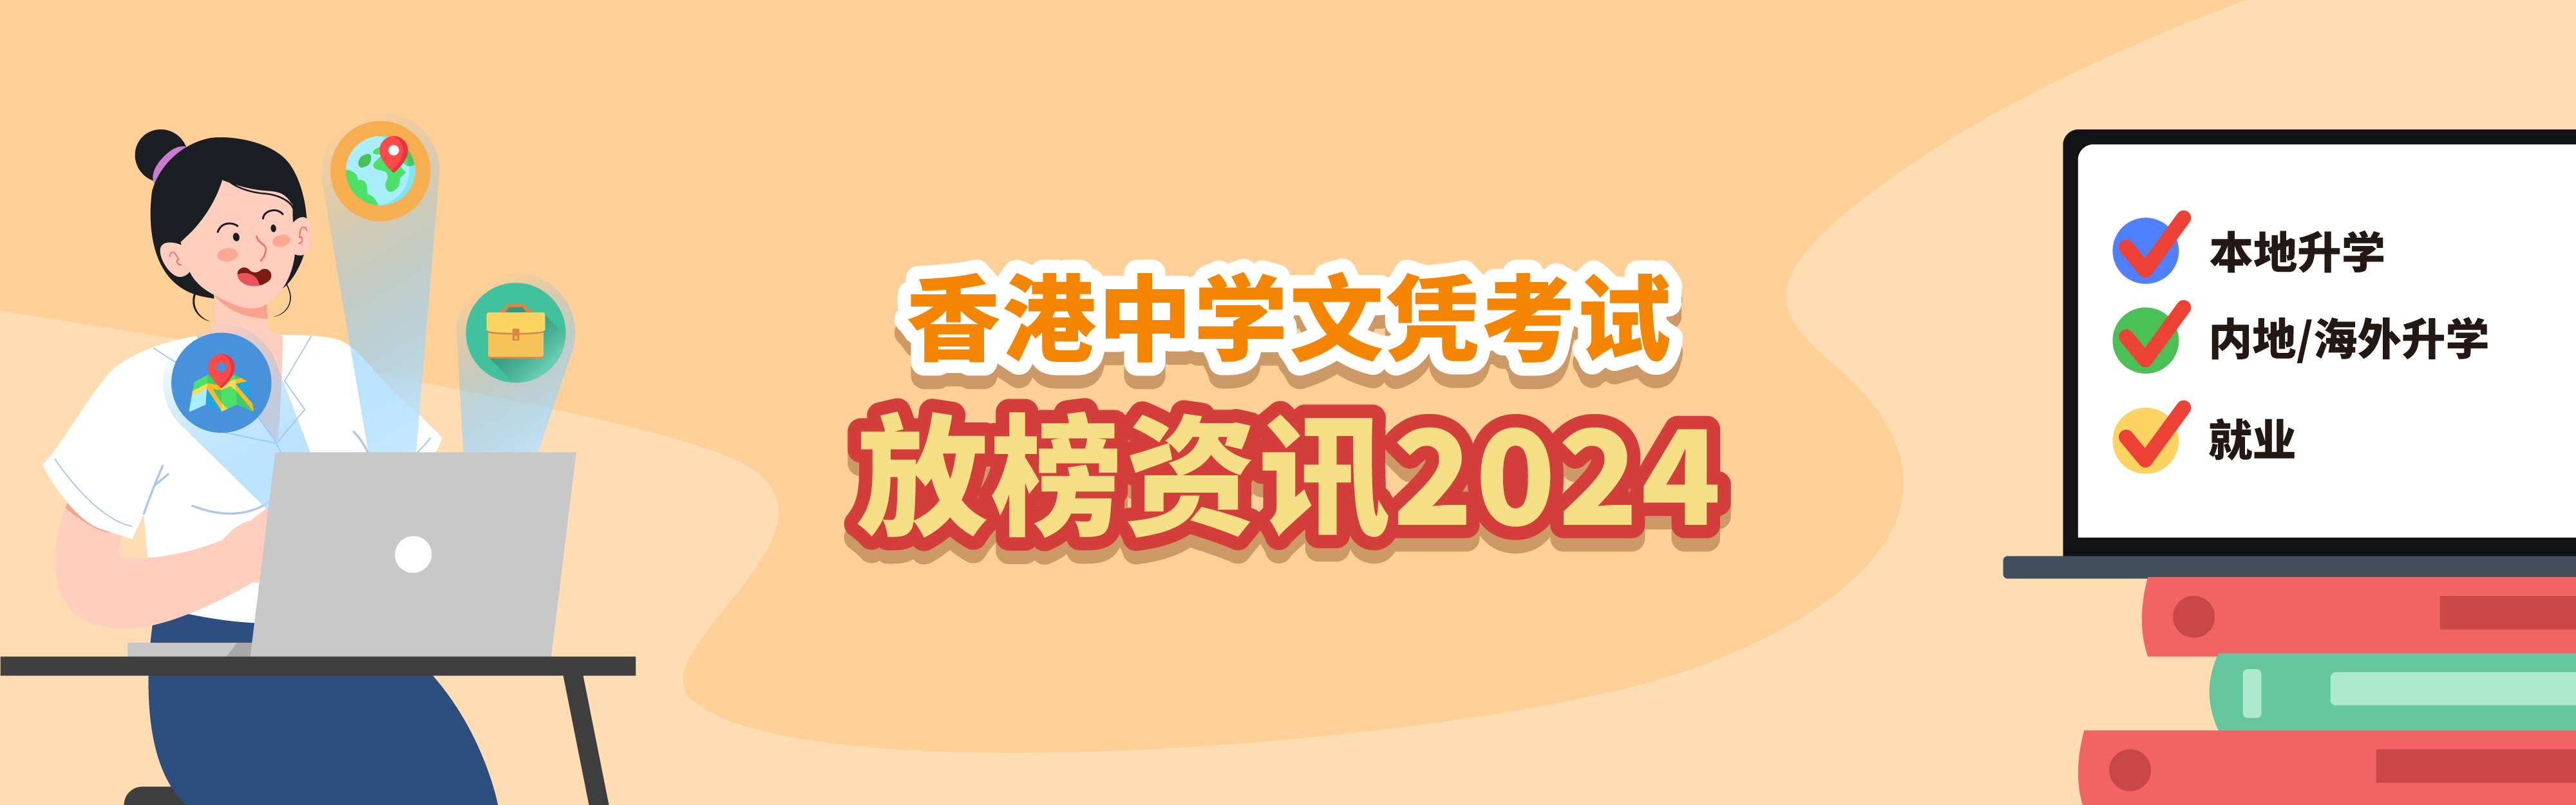 2023 香港中学文凭考试放榜资讯